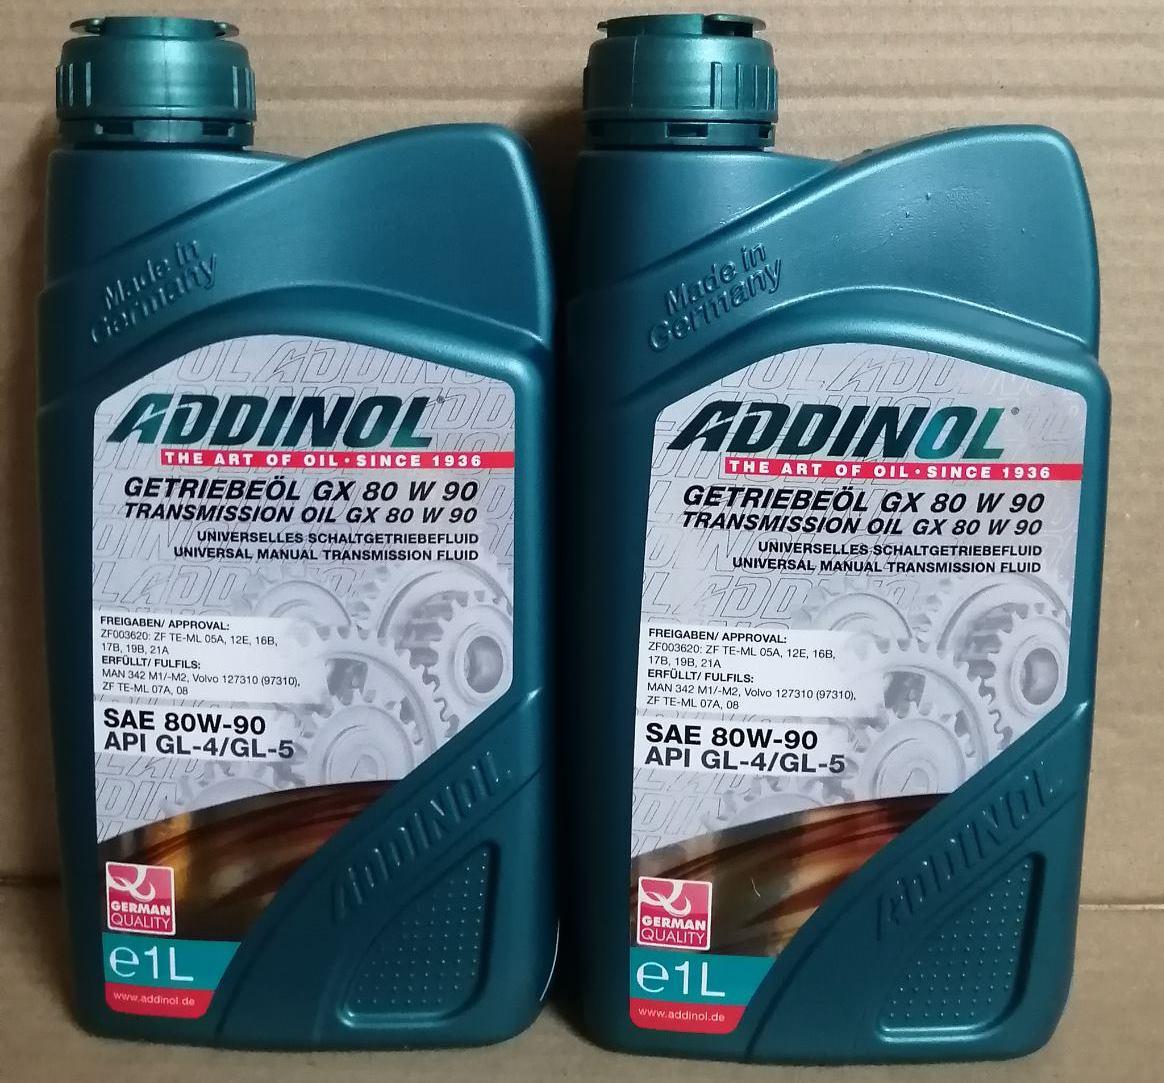 Трансмиссионное масло ADDINOL GX 80W90, 1л